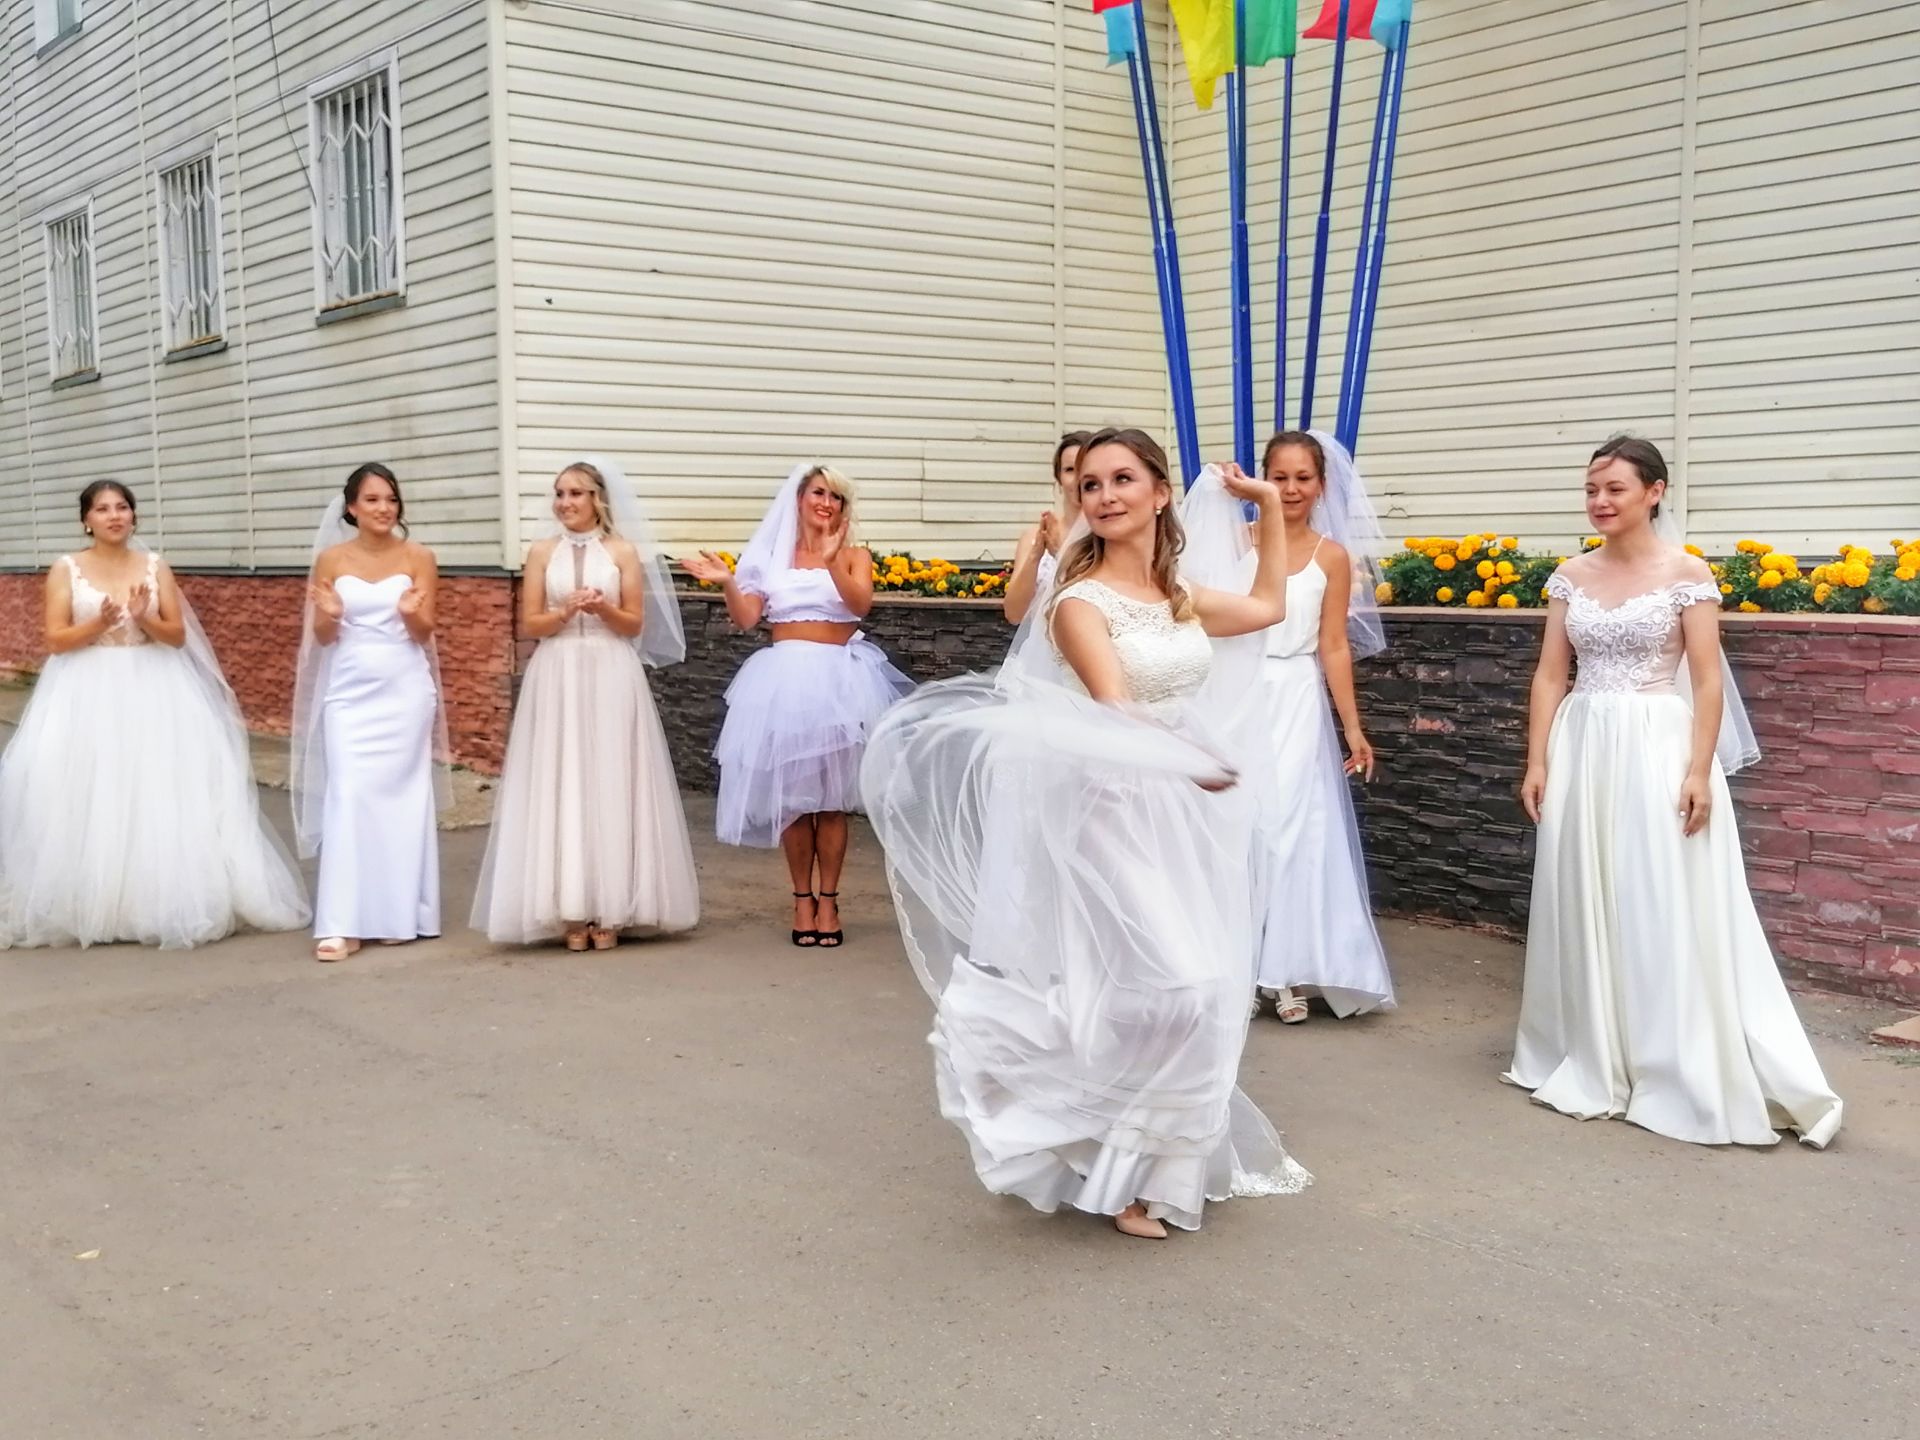 Невесты Менделеевска участвовали в забеге в валенках и устроили флешмоб с байкерами